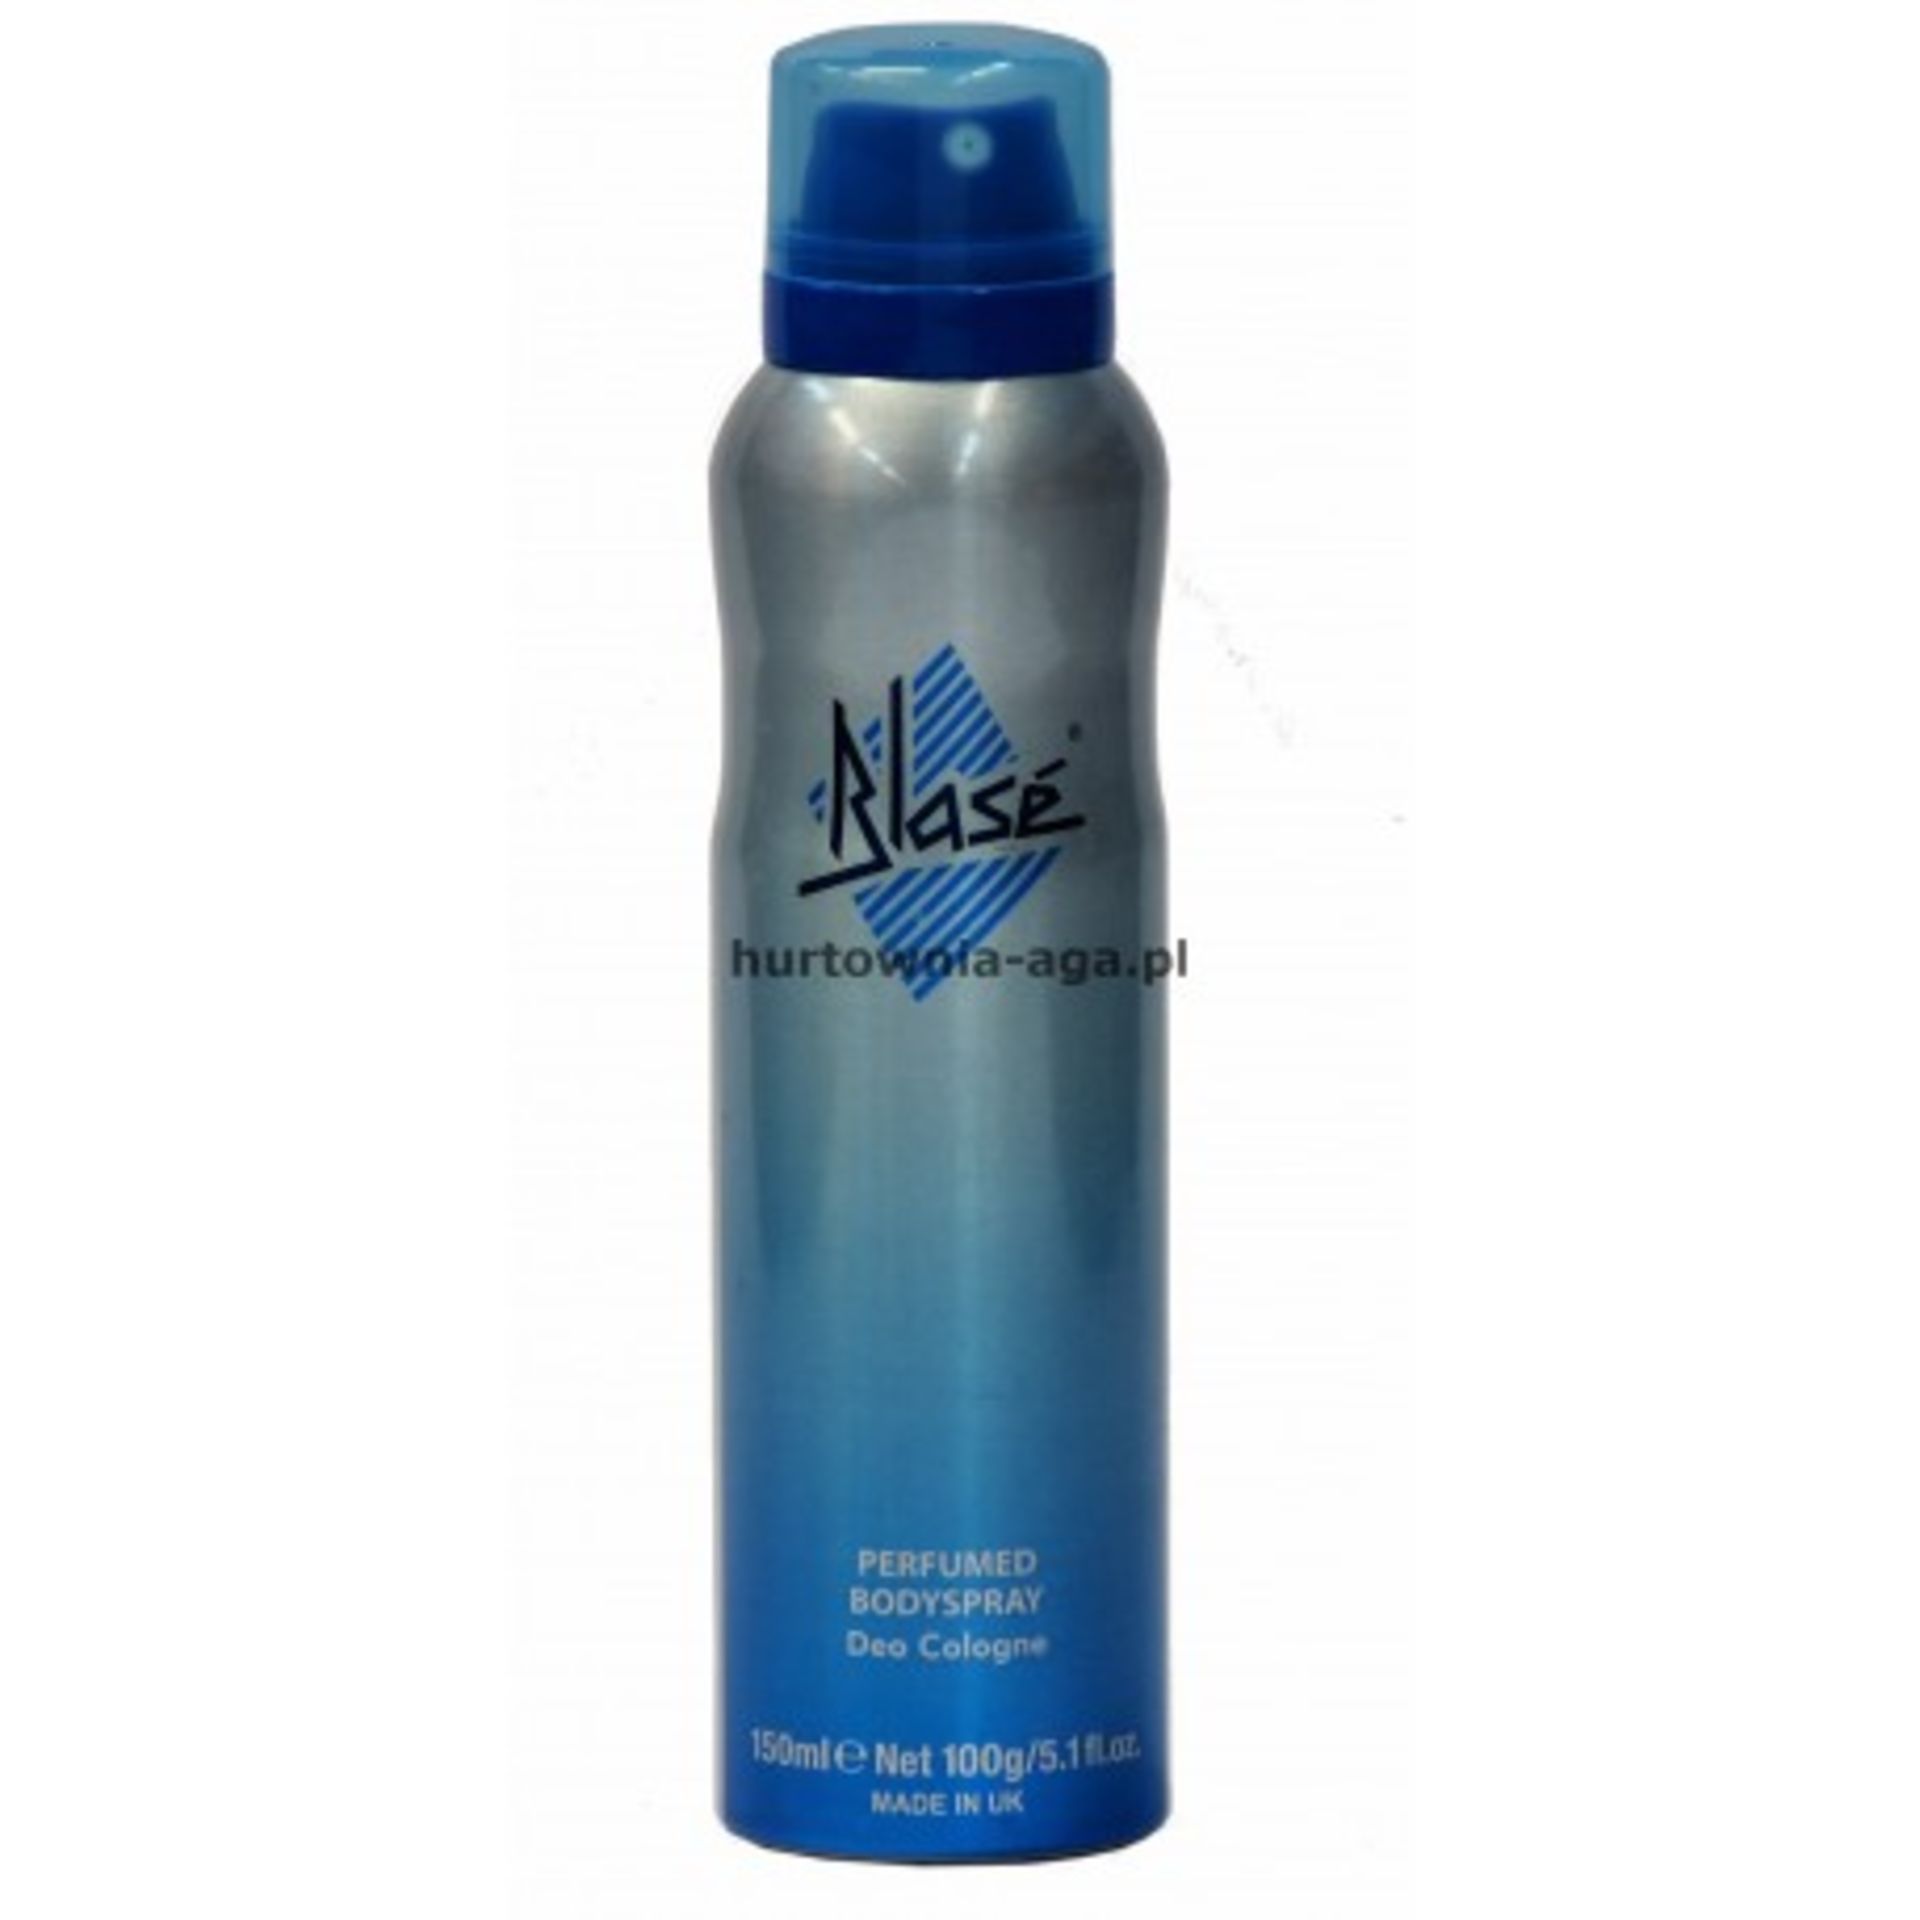 + VAT Brand New Blase Body Spray 150ml